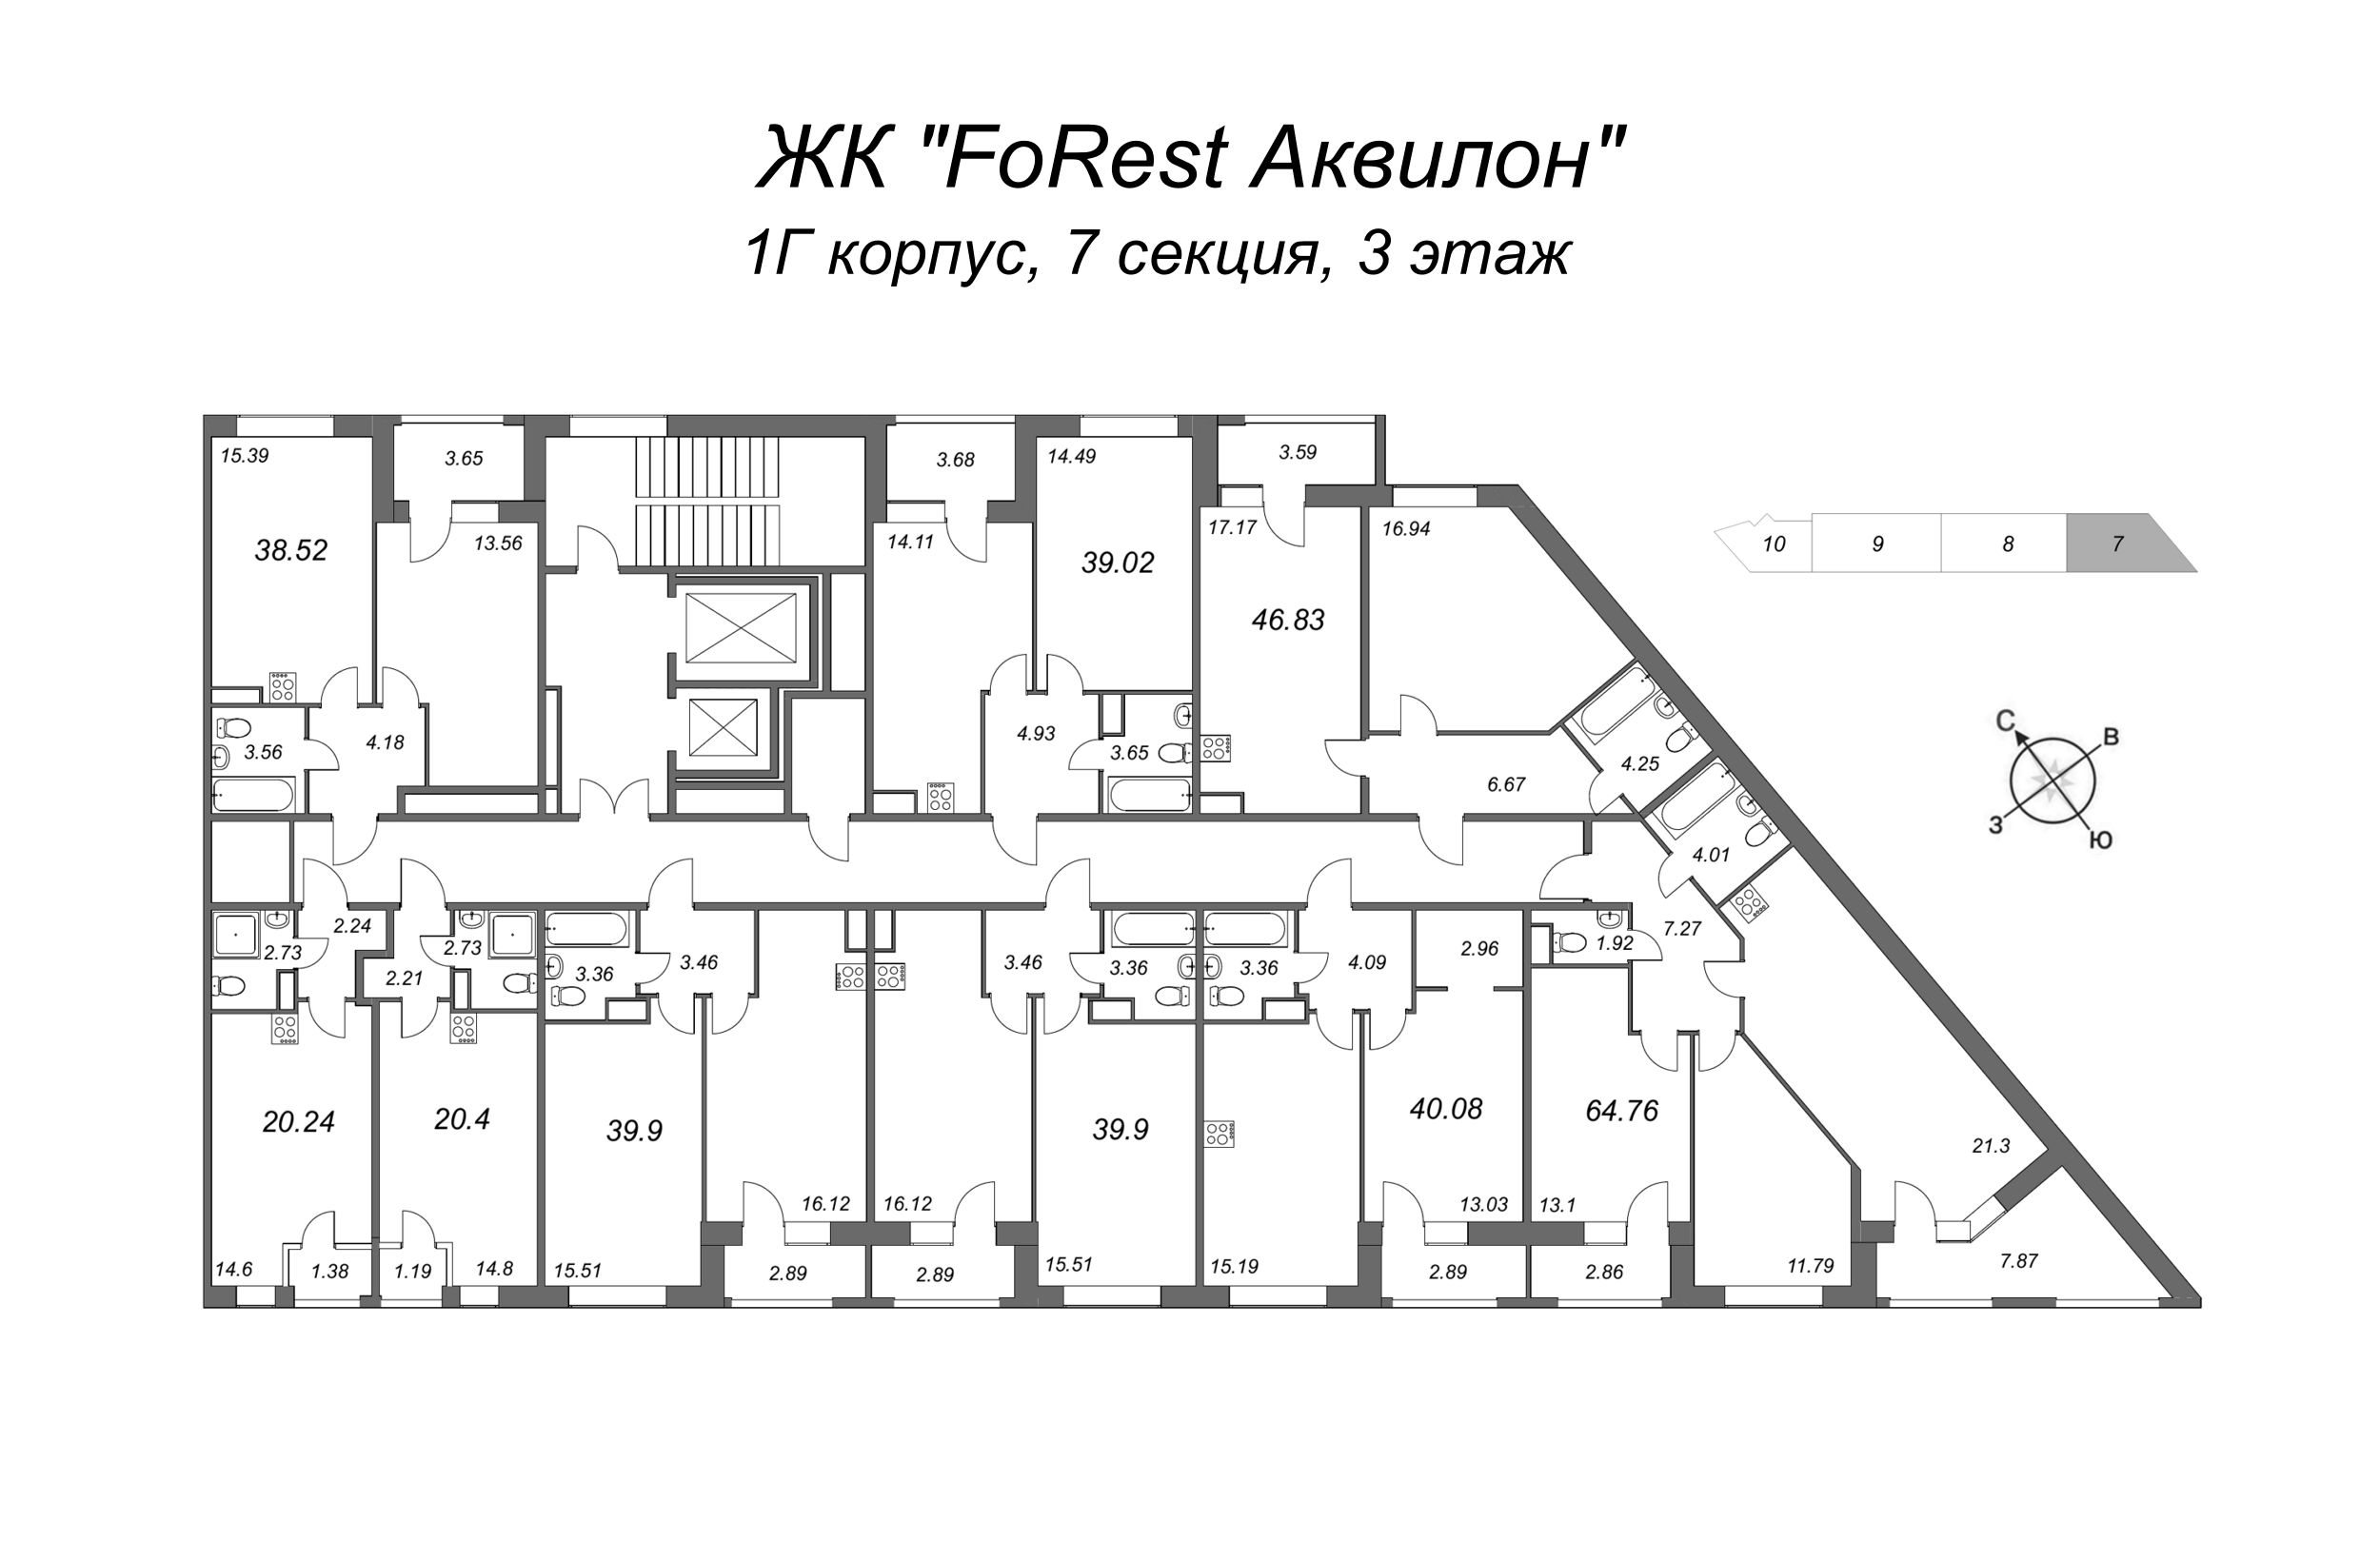 3-комнатная (Евро) квартира, 64 м² в ЖК "FoRest Аквилон" - планировка этажа